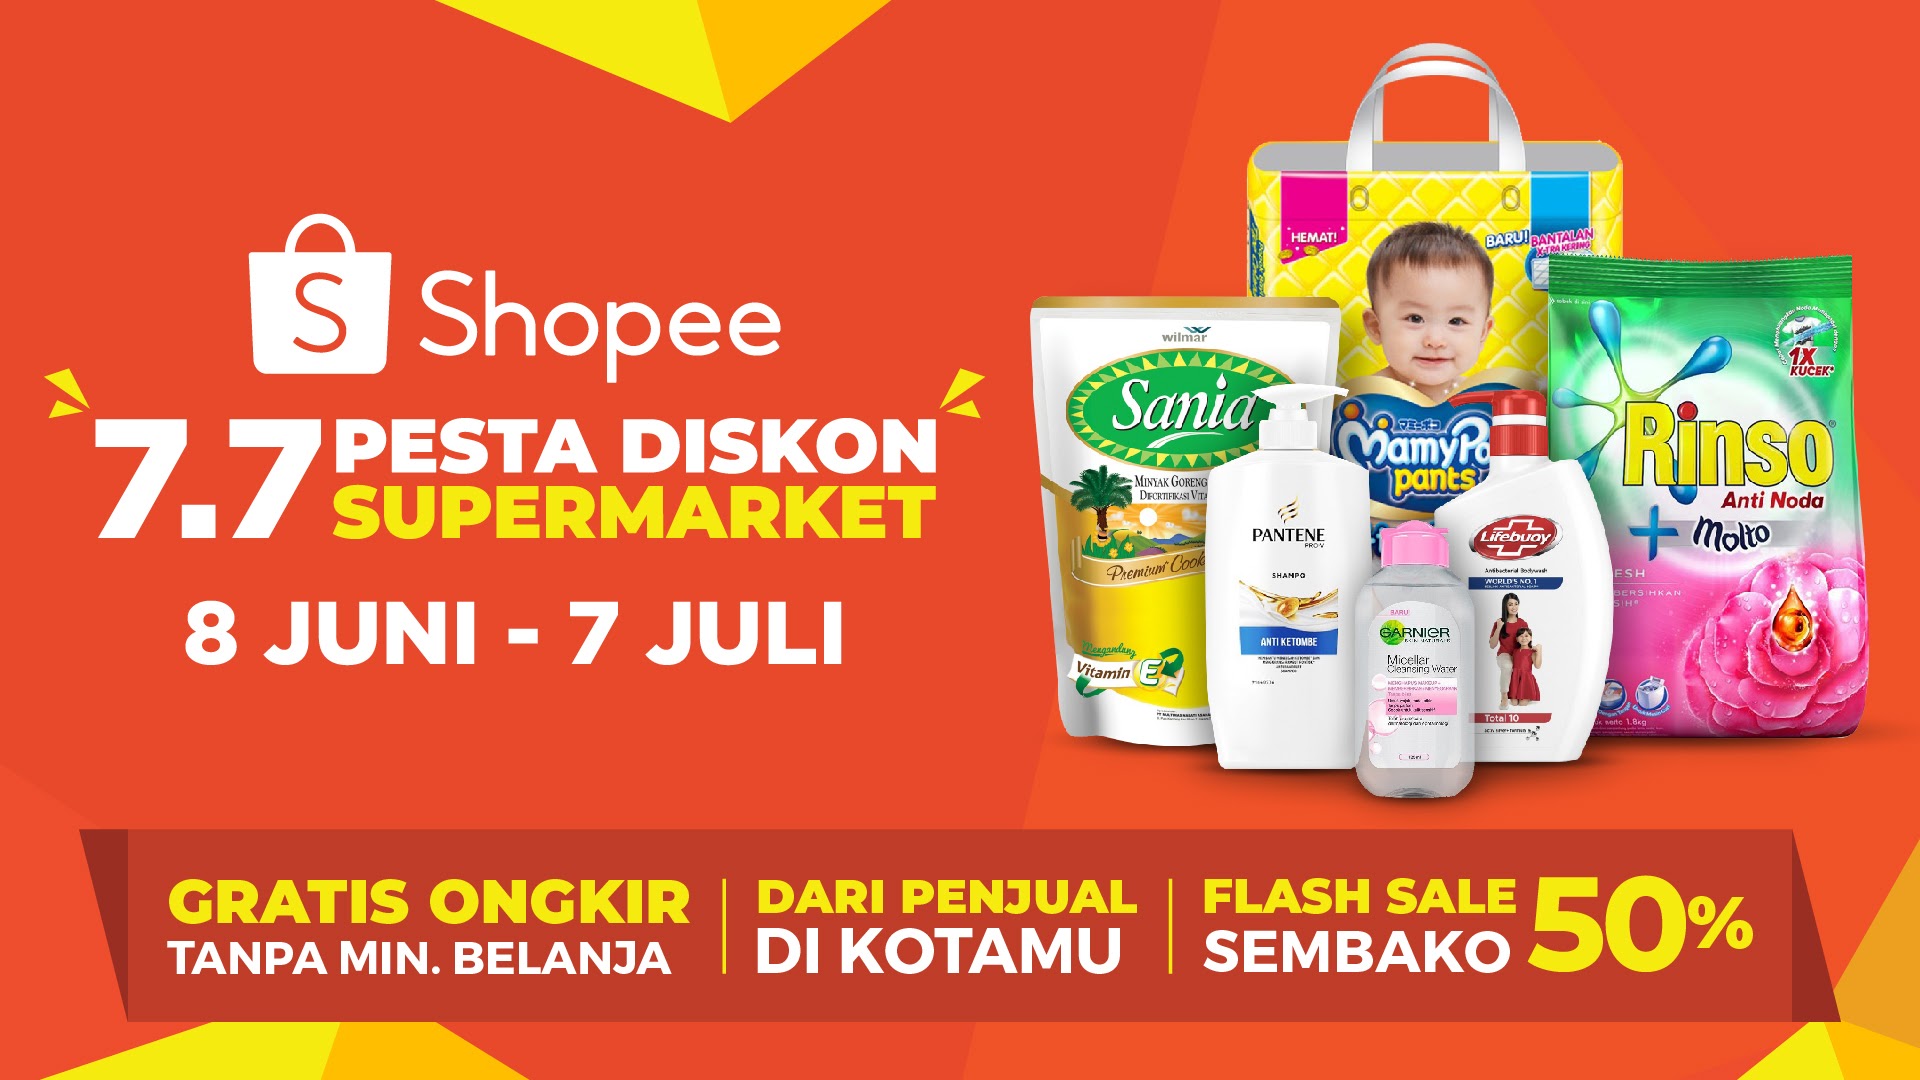 Yuk, Belanja Kebutuhan Harian di 7.7 Pesta Diskon Supermarket Shopee!